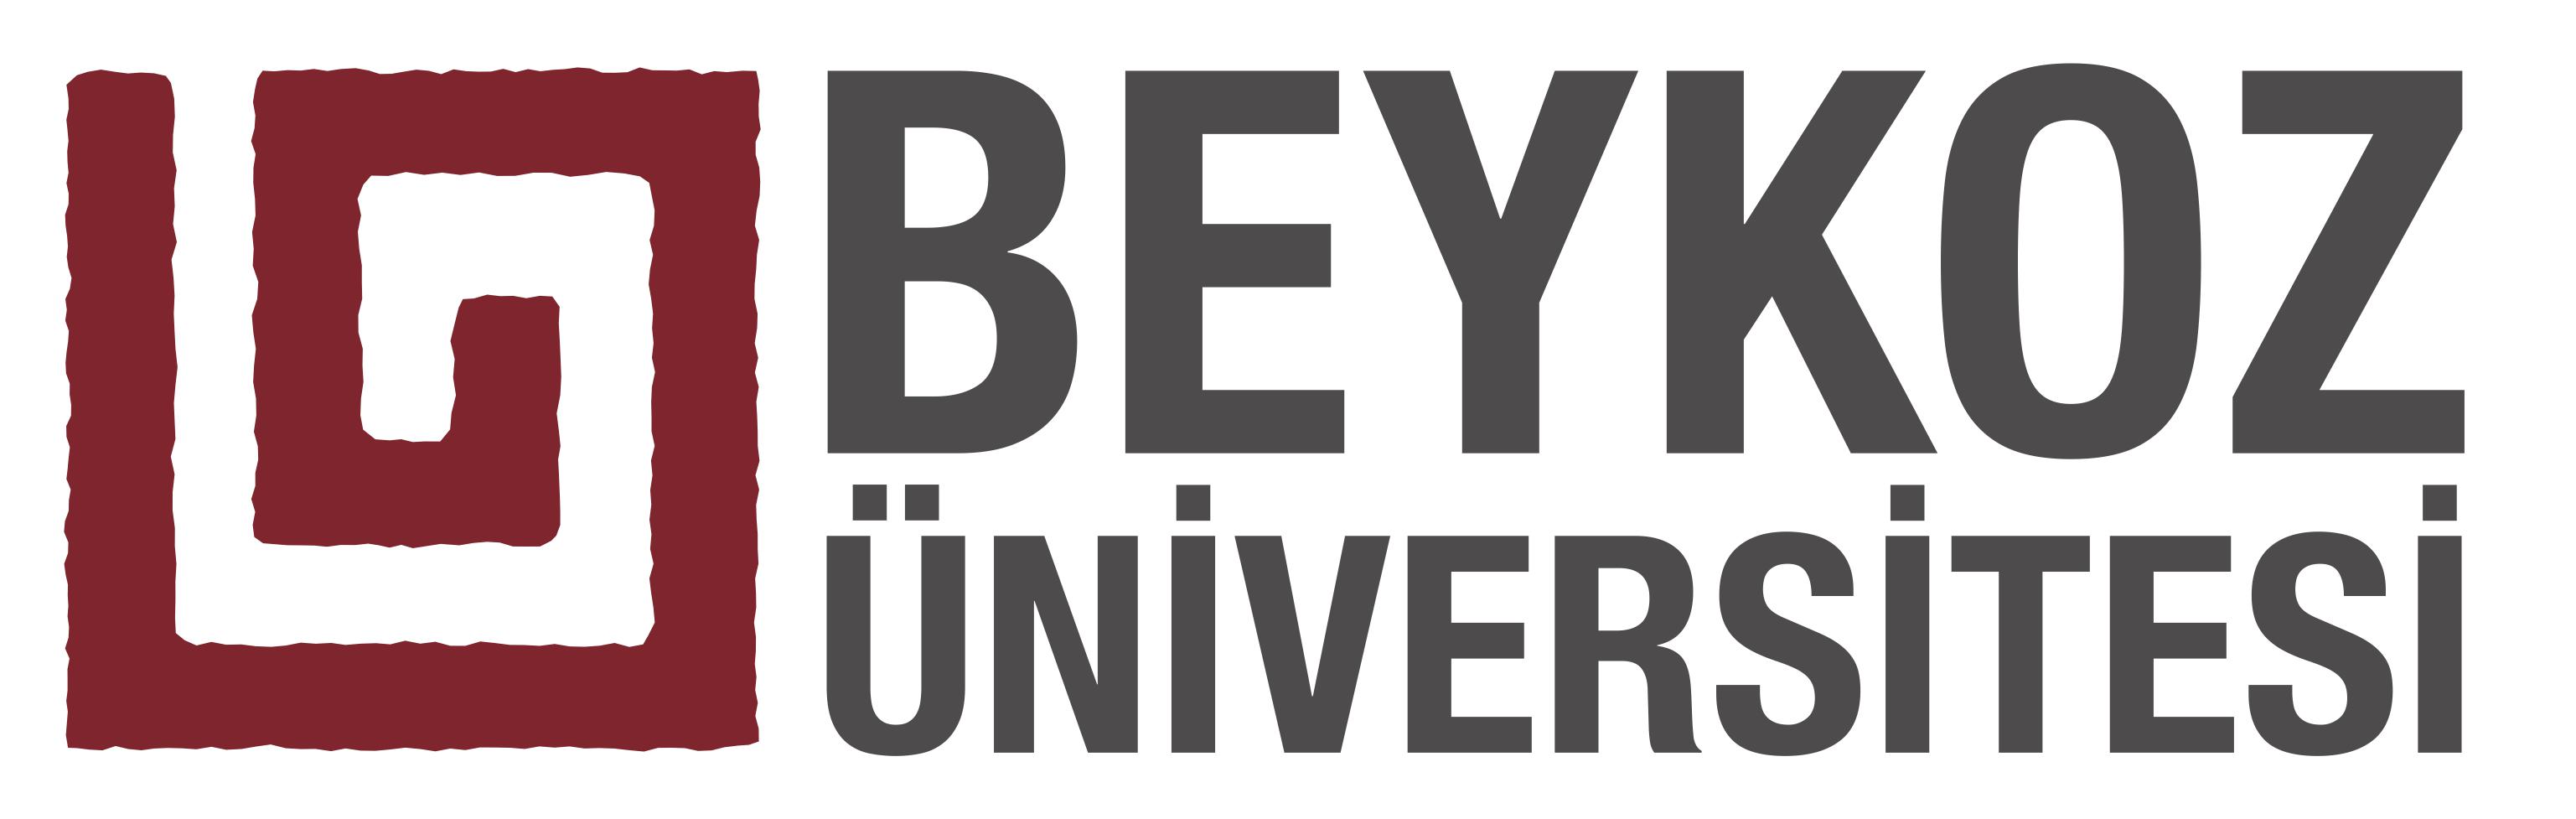 Beykoz_Universitesi_logo